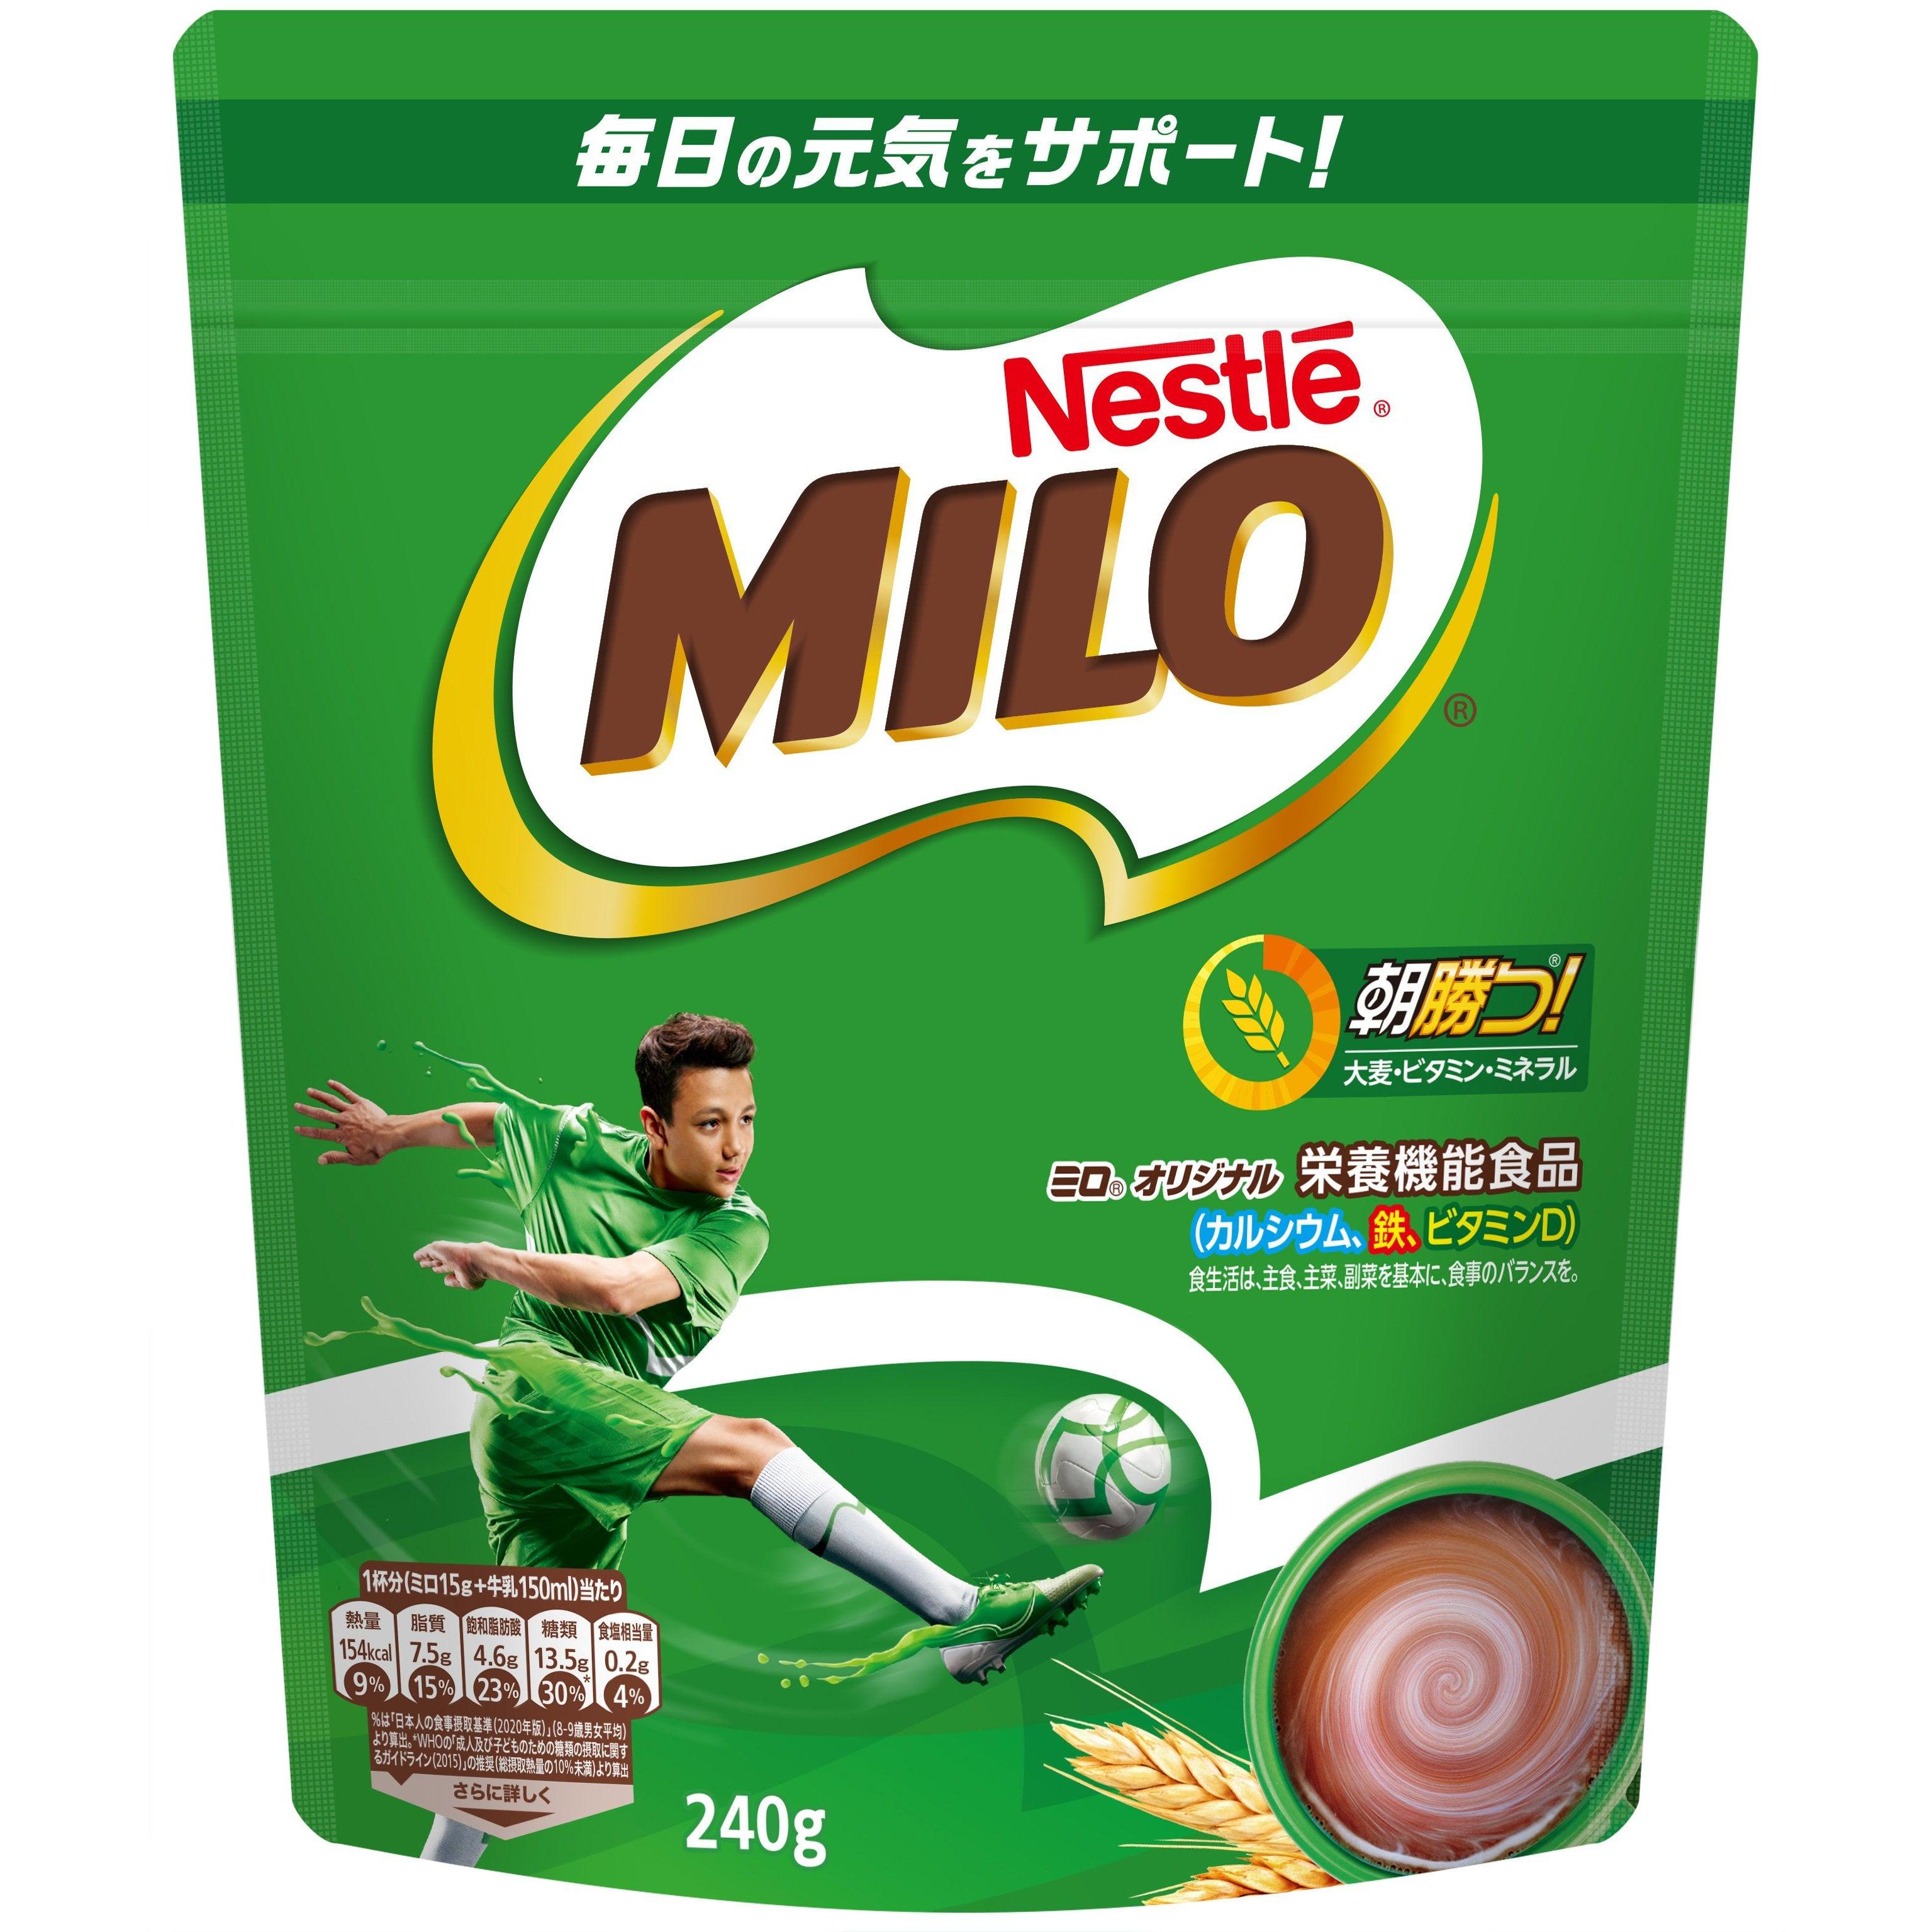 Nestlé Milo Original Instant Chocolate Malt Powder 240g